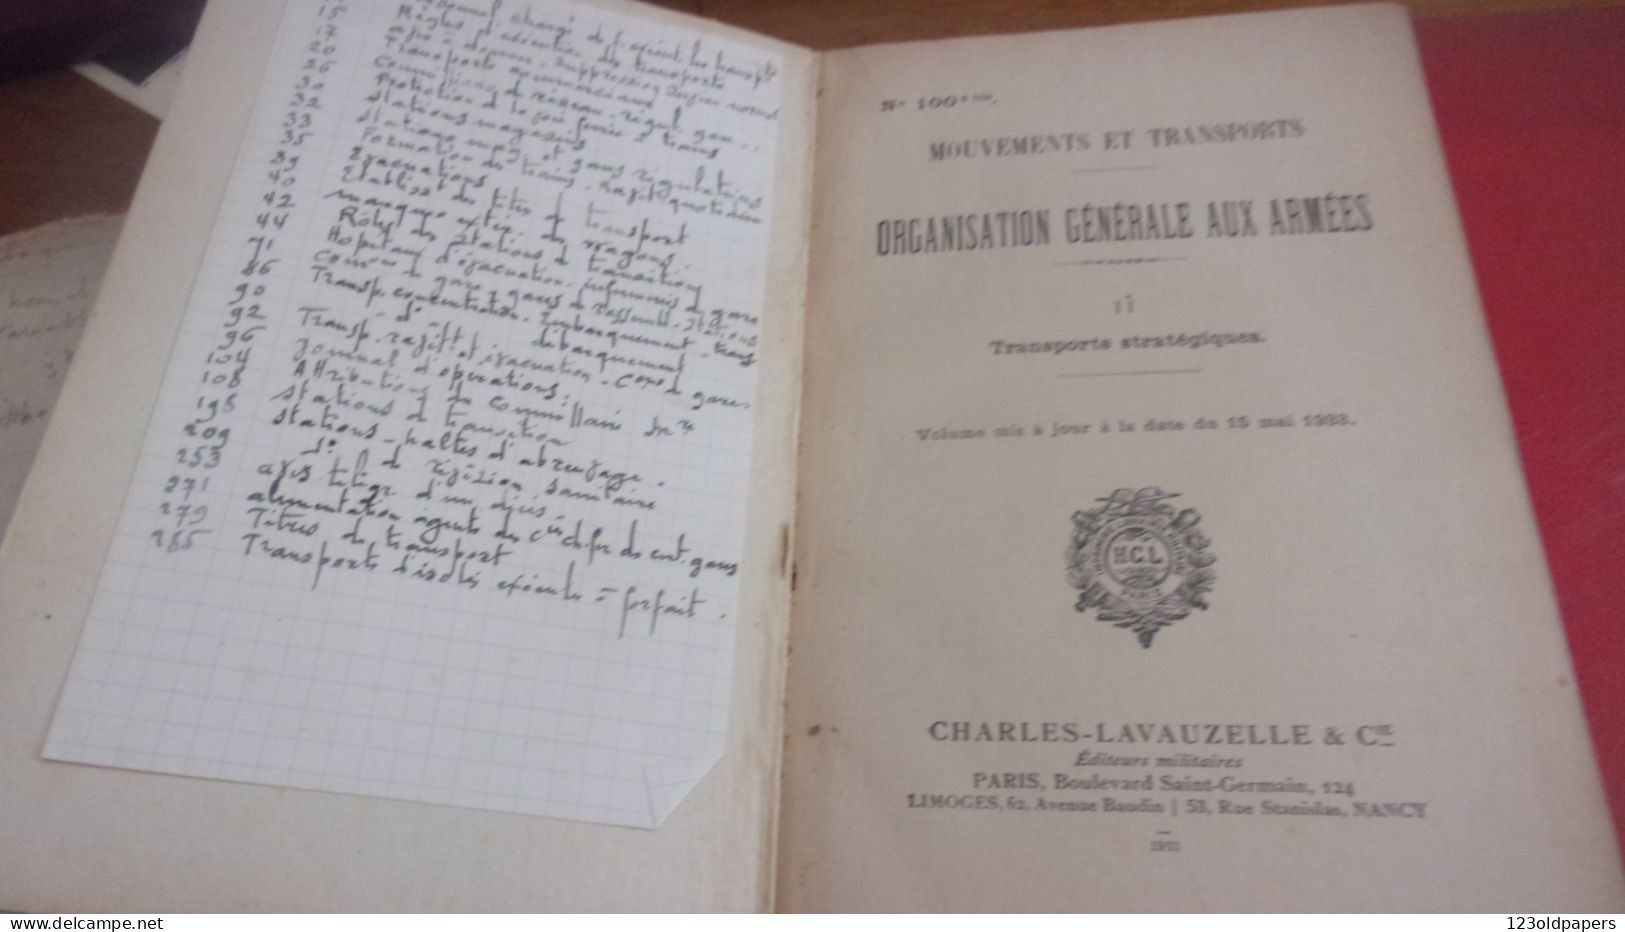 1934 LAVAUZELLE MOUVEMENTS TRANSPORTS ORGANISATION GENERALE AUX ARMEES TRANSPORT STRATEGIQUE - Francese